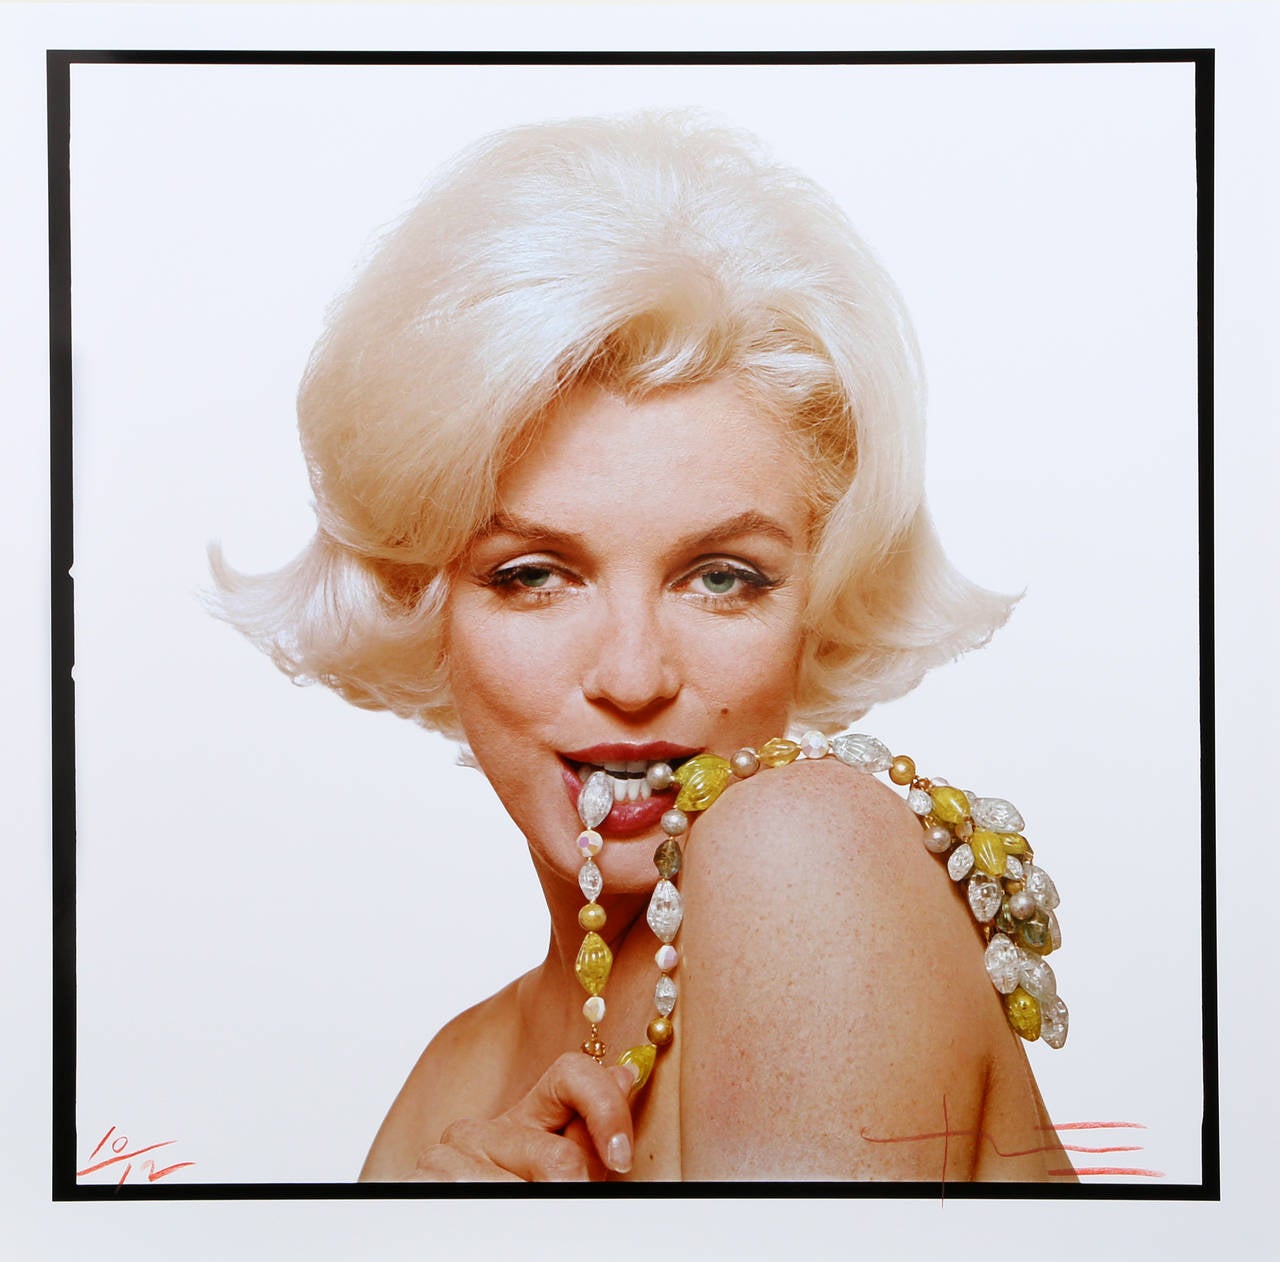 Artiste : Bert Stern
Titre : Marilyn Monroe - La dernière séance
Année : 1962 (imprimé en 2009)
Médium : Photographie en couleur, signée et numérotée au crayon rouge
Edition : 12
Taille de l'image : 22 x 22 pouces
Taille : 24 in. x 24 in. (60,96 cm